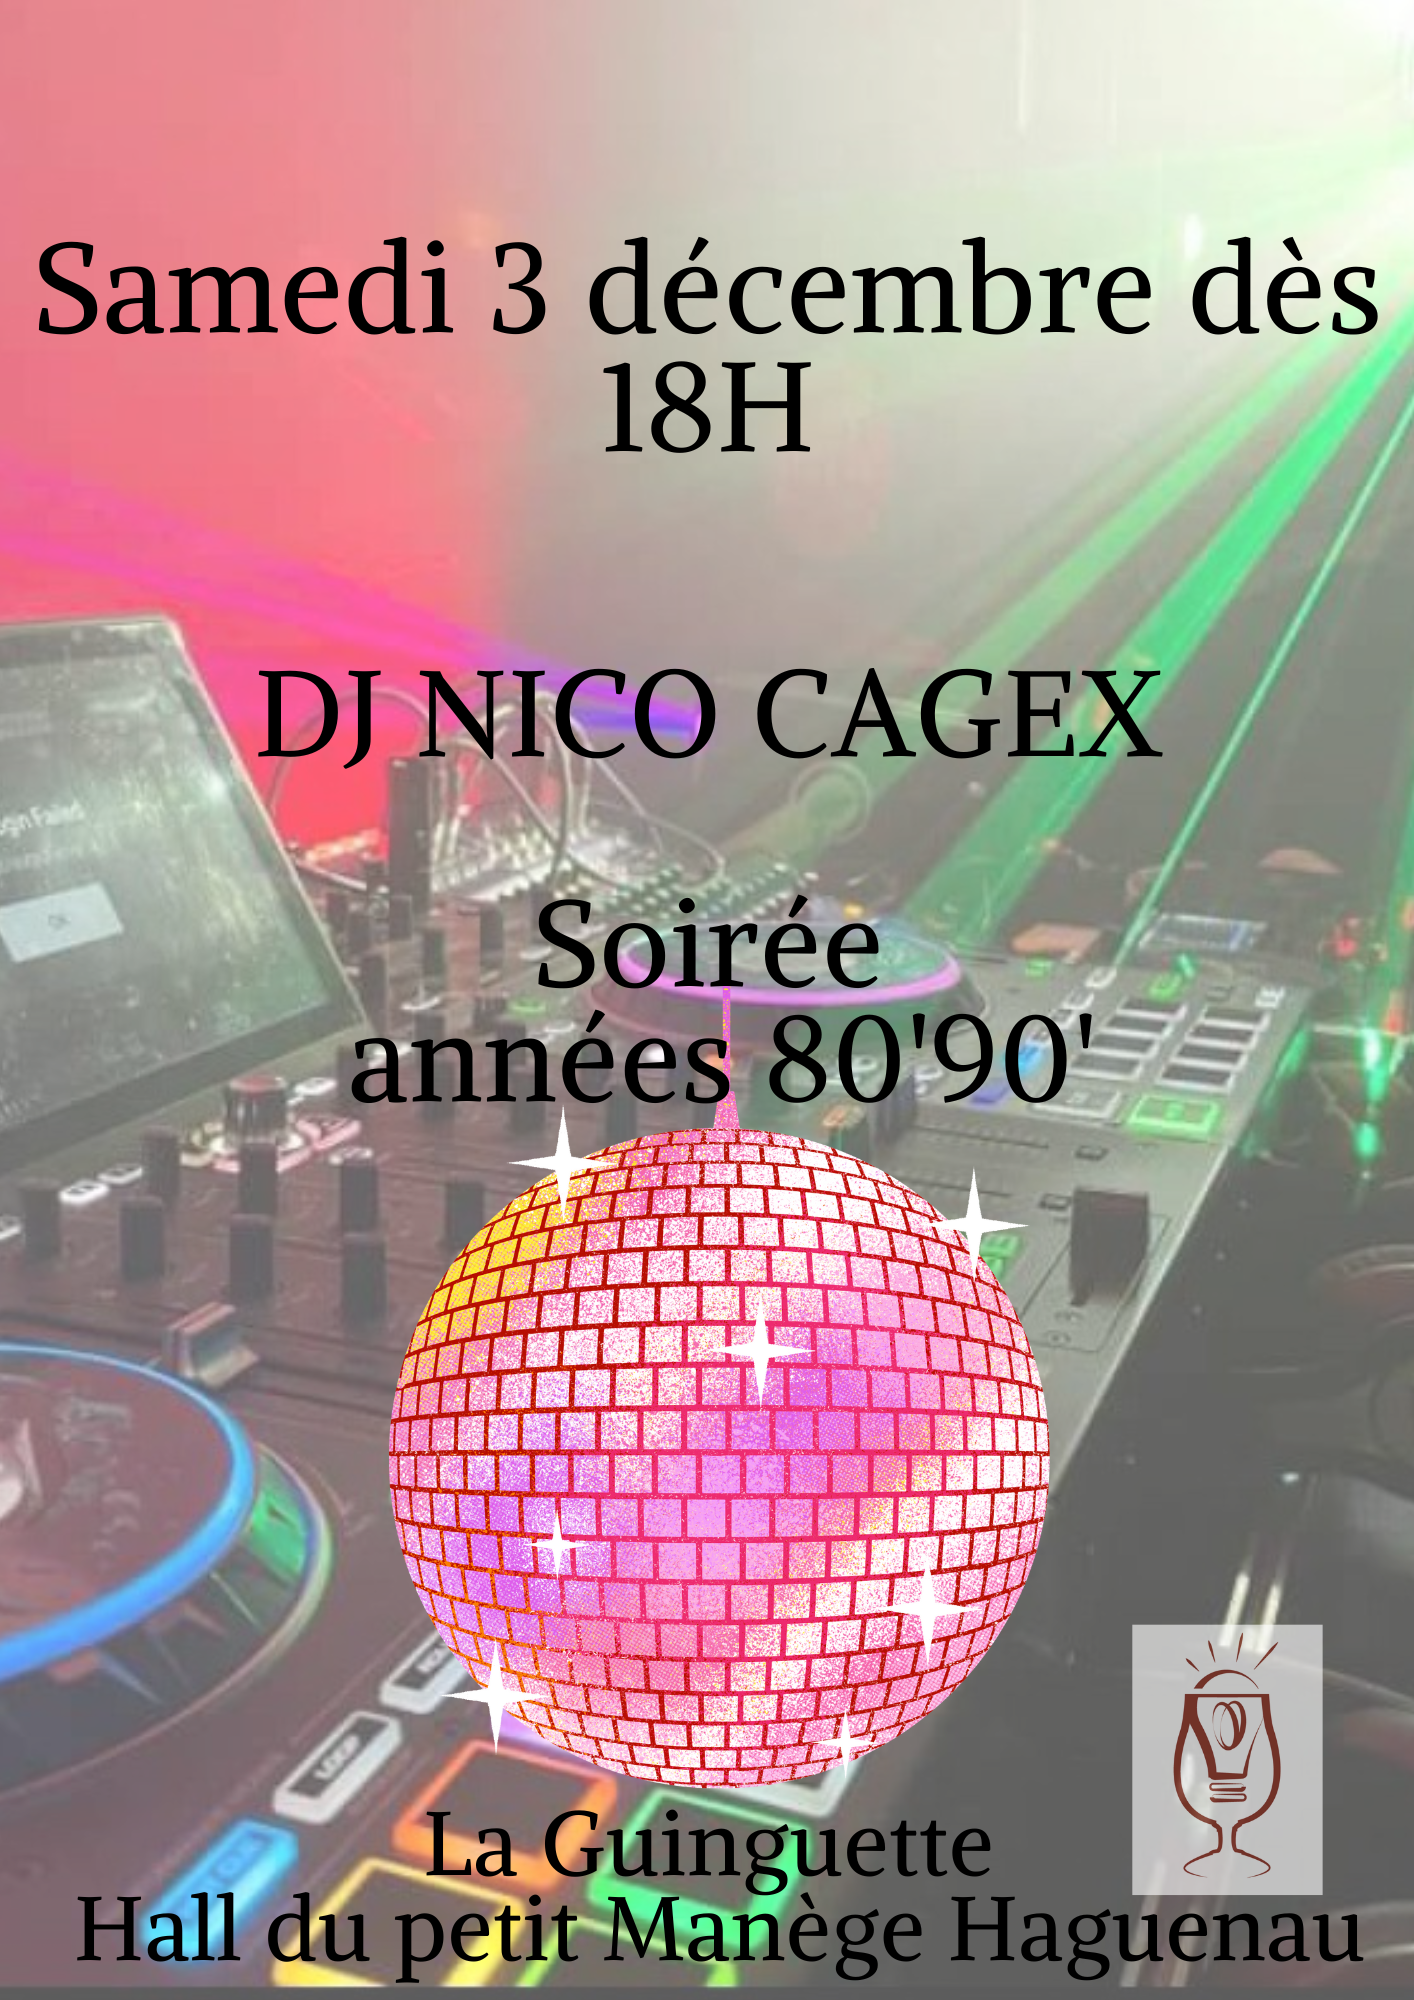 Soirée dance music DJ avec Nico Cagex à la Guinguette